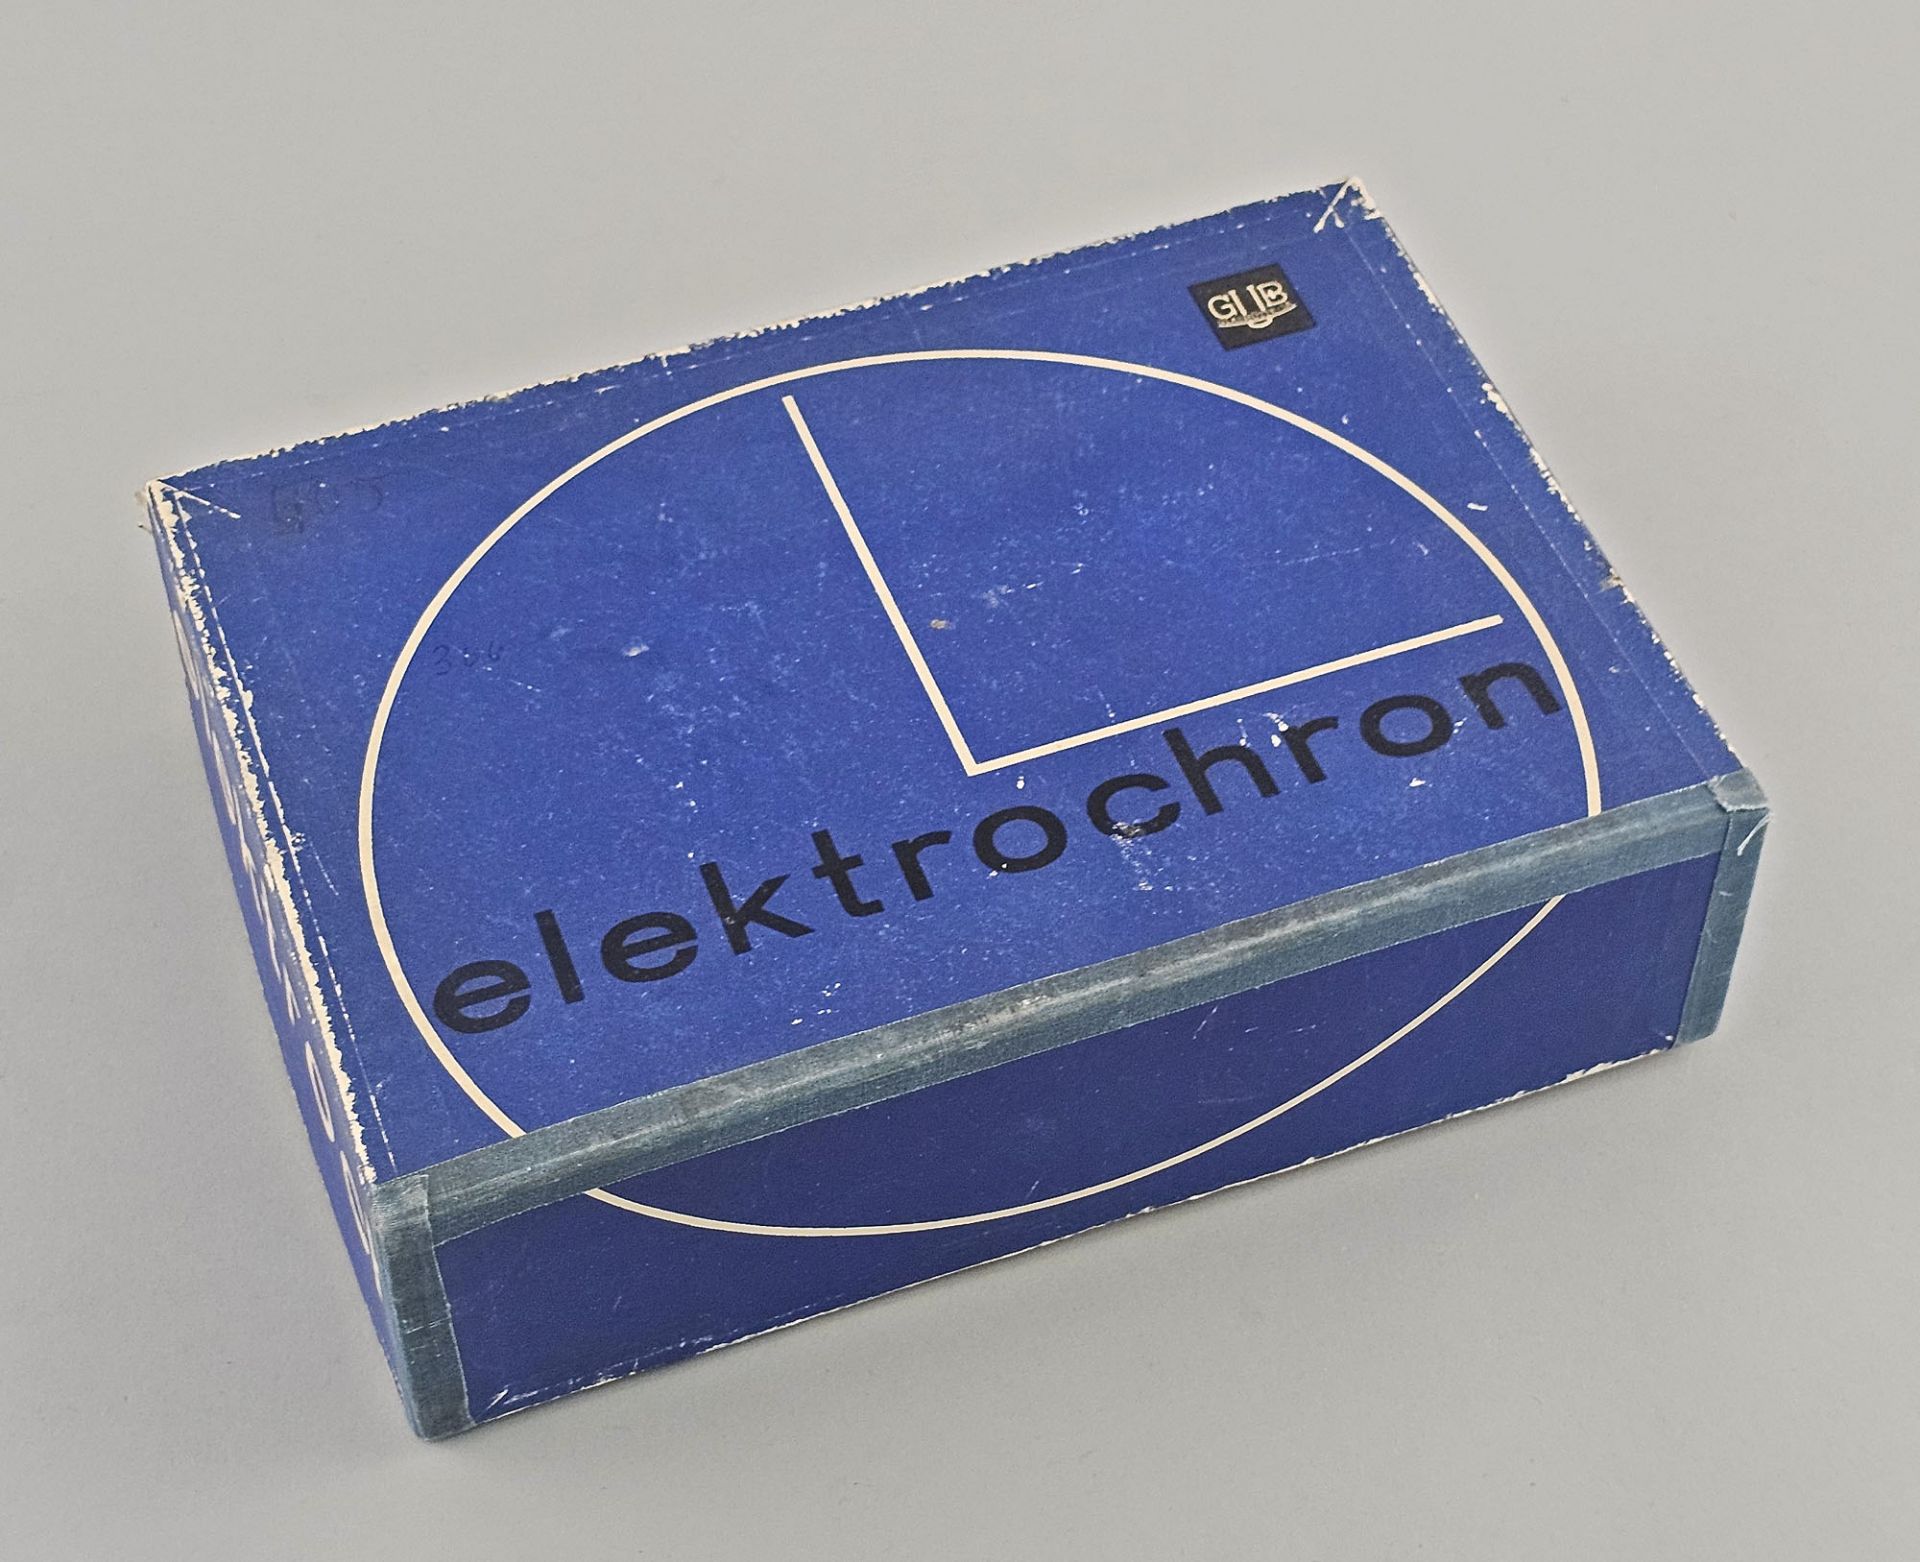 Elektrische Wanduhr Glashütte elektrochron Typ 410 - Bild 3 aus 3